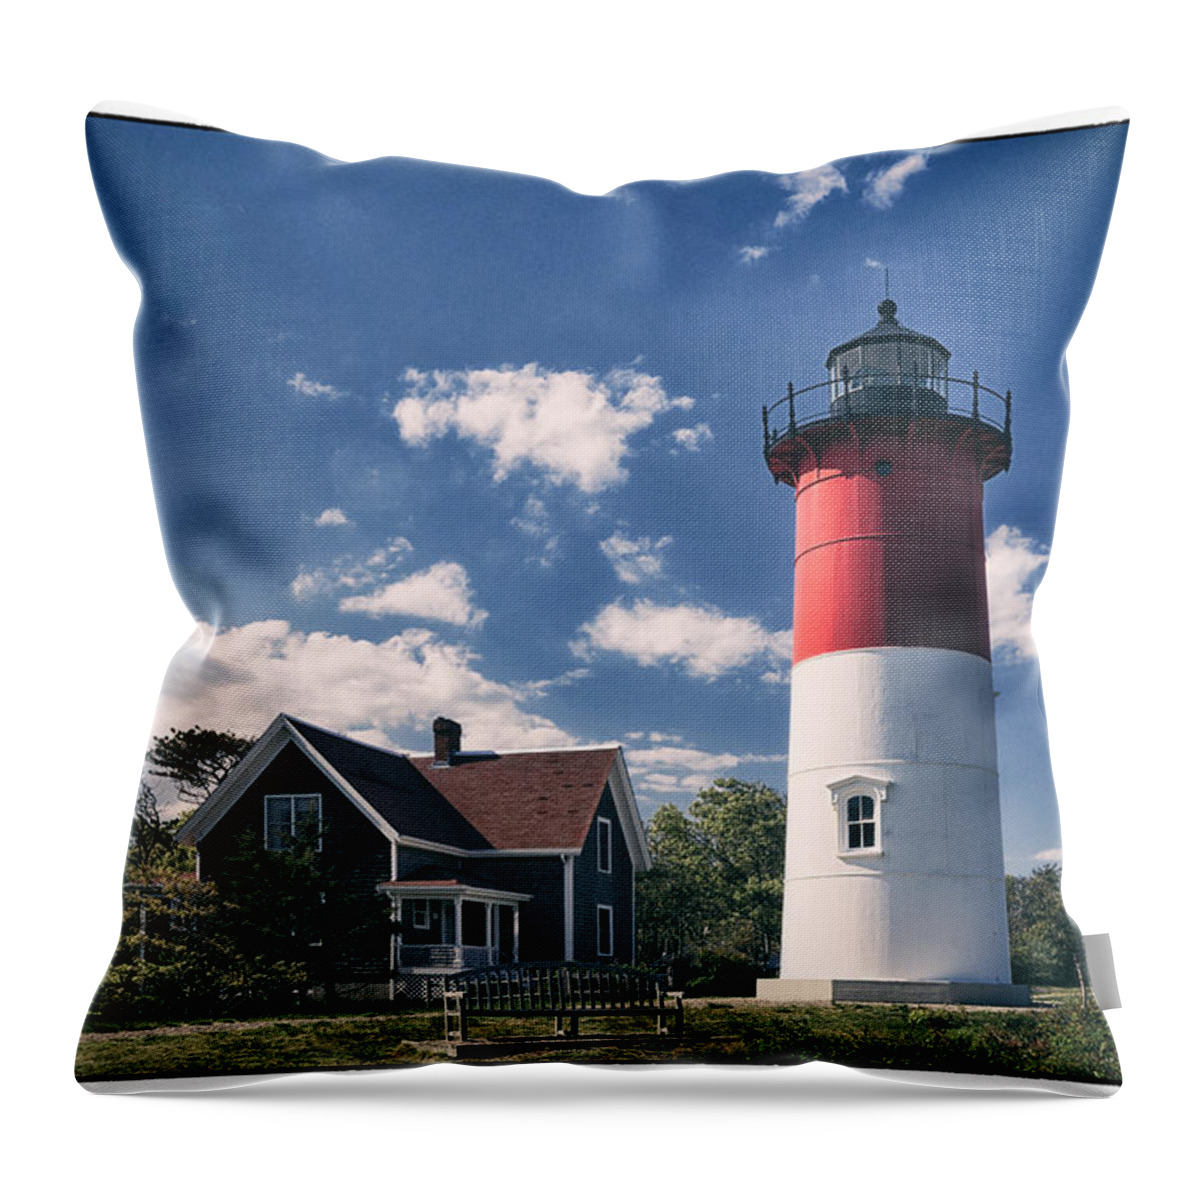 Massachusetts Throw Pillow featuring the photograph Nauset Lighthouse #2 by Robert Fawcett